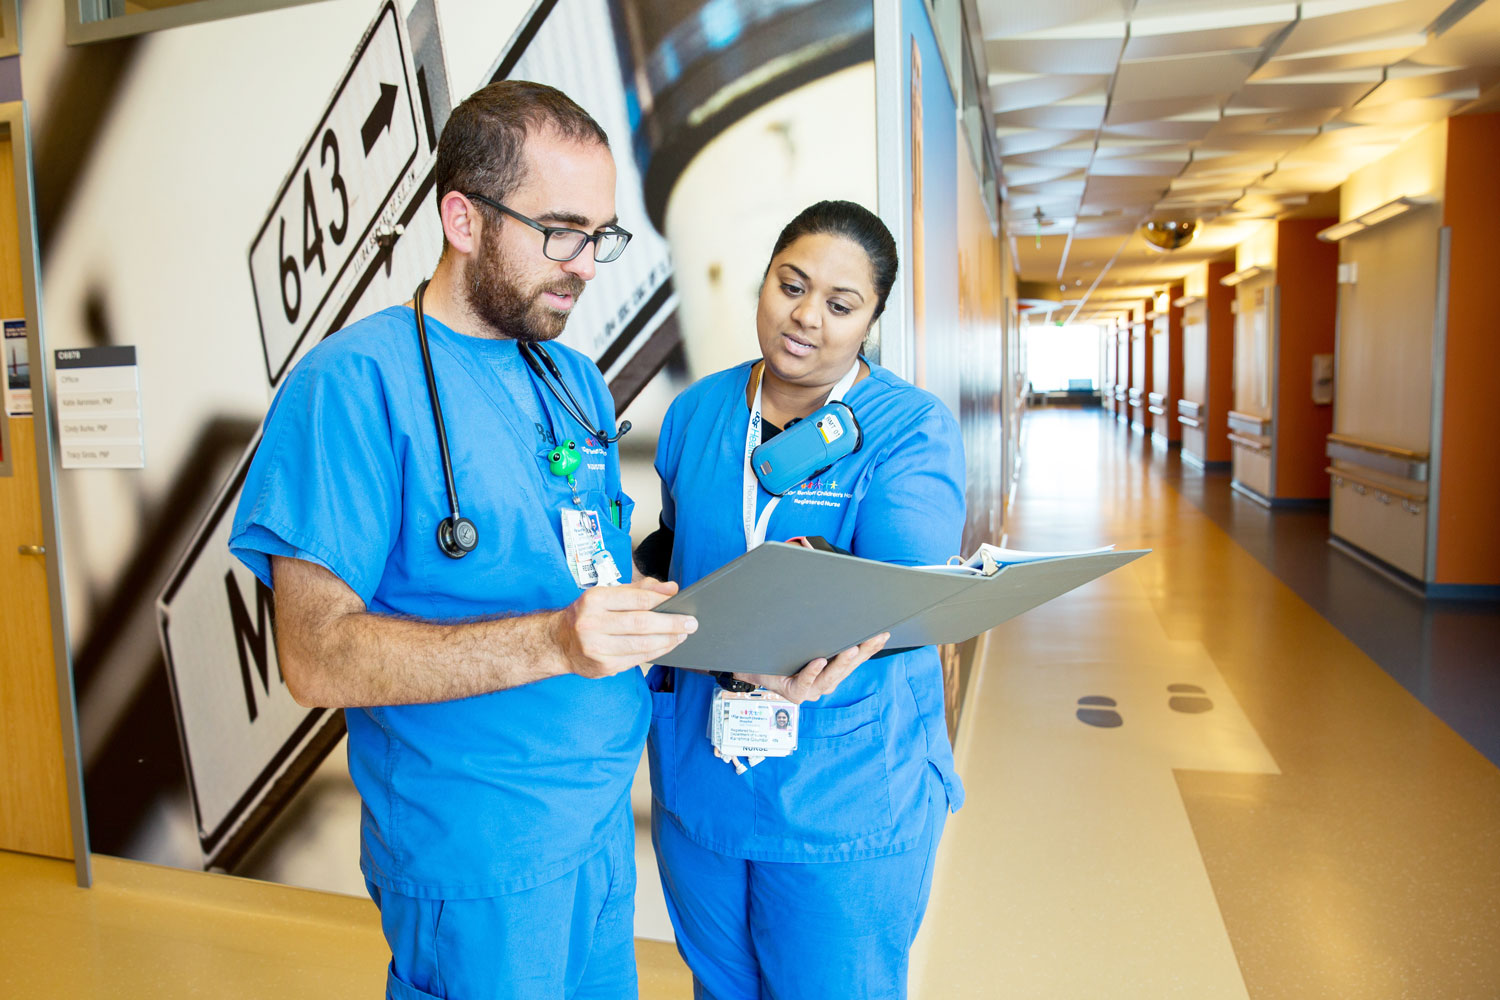 2 UCSF nurses talk in a hospital hallway